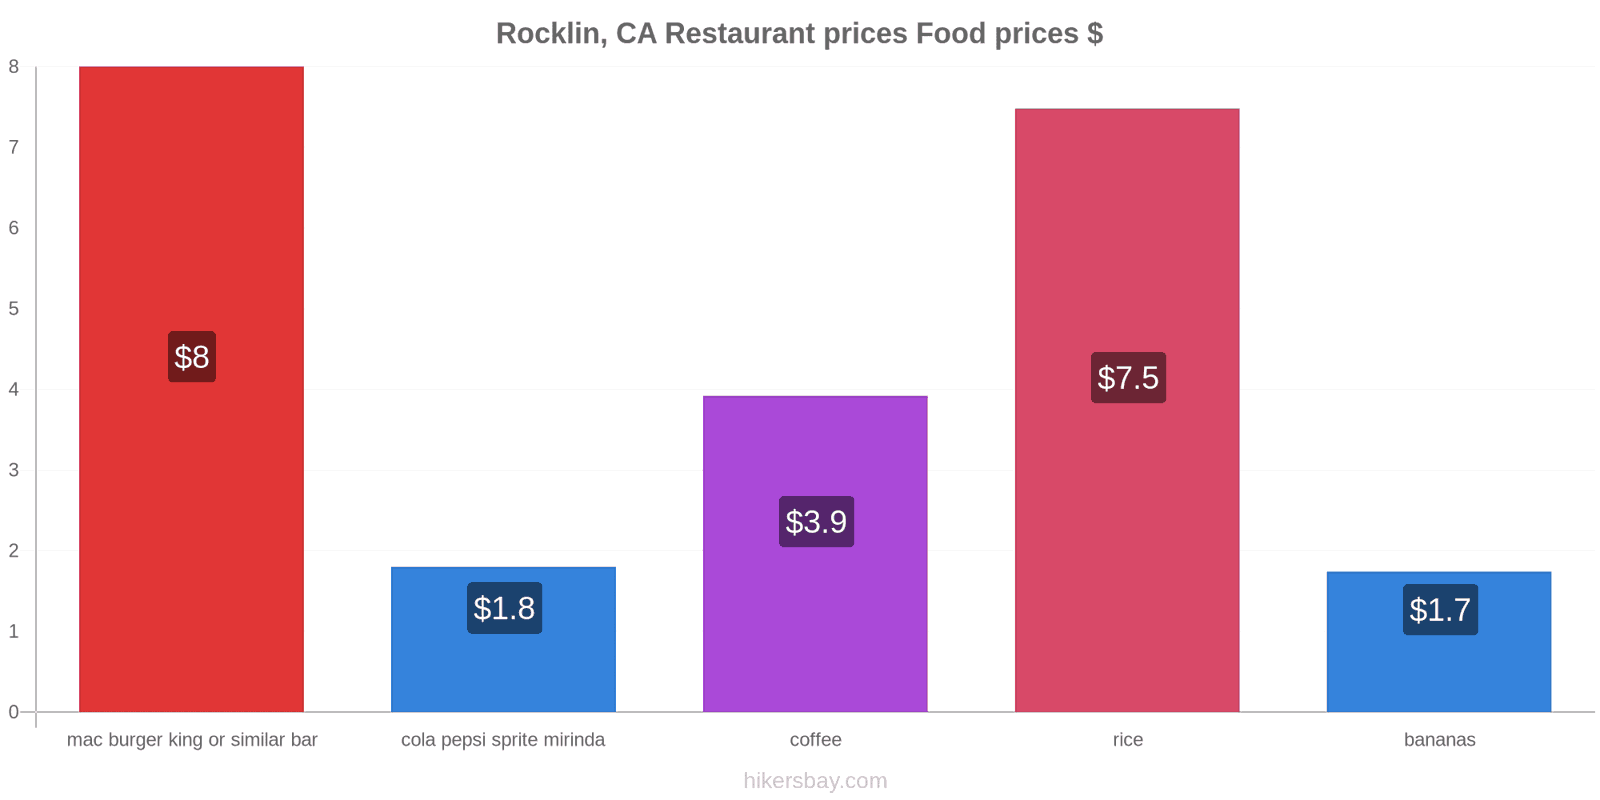 Rocklin, CA price changes hikersbay.com